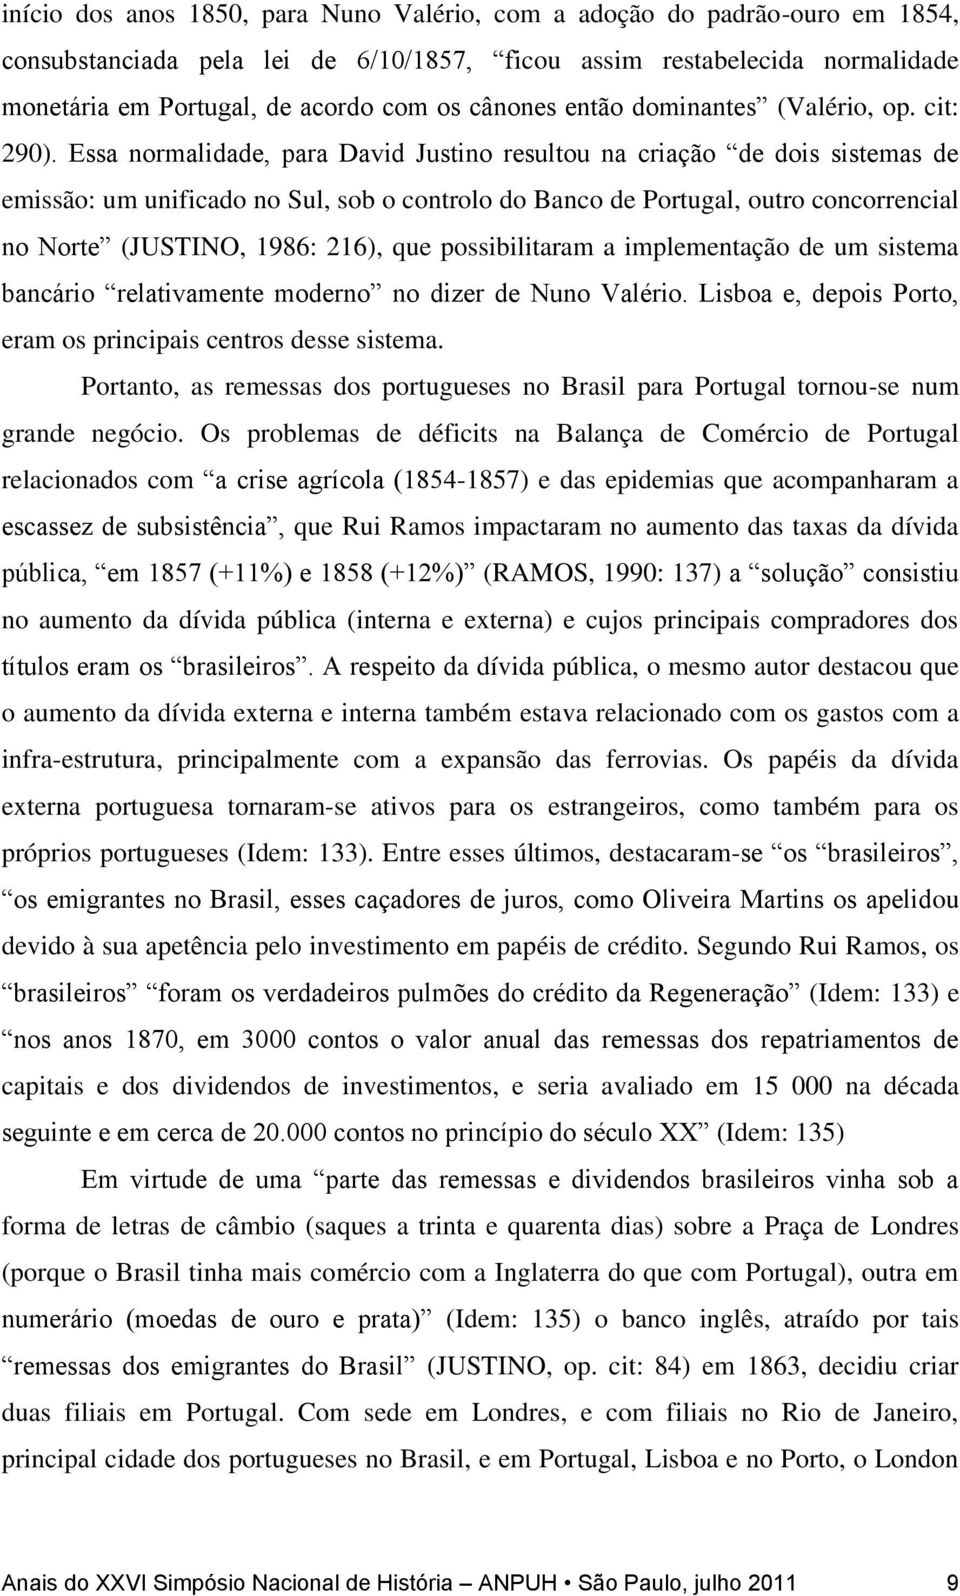 Essa normalidade, para David Justino resultou na criação de dois sistemas de emissão: um unificado no Sul, sob o controlo do Banco de Portugal, outro concorrencial no Norte (JUSTINO, 1986: 216), que